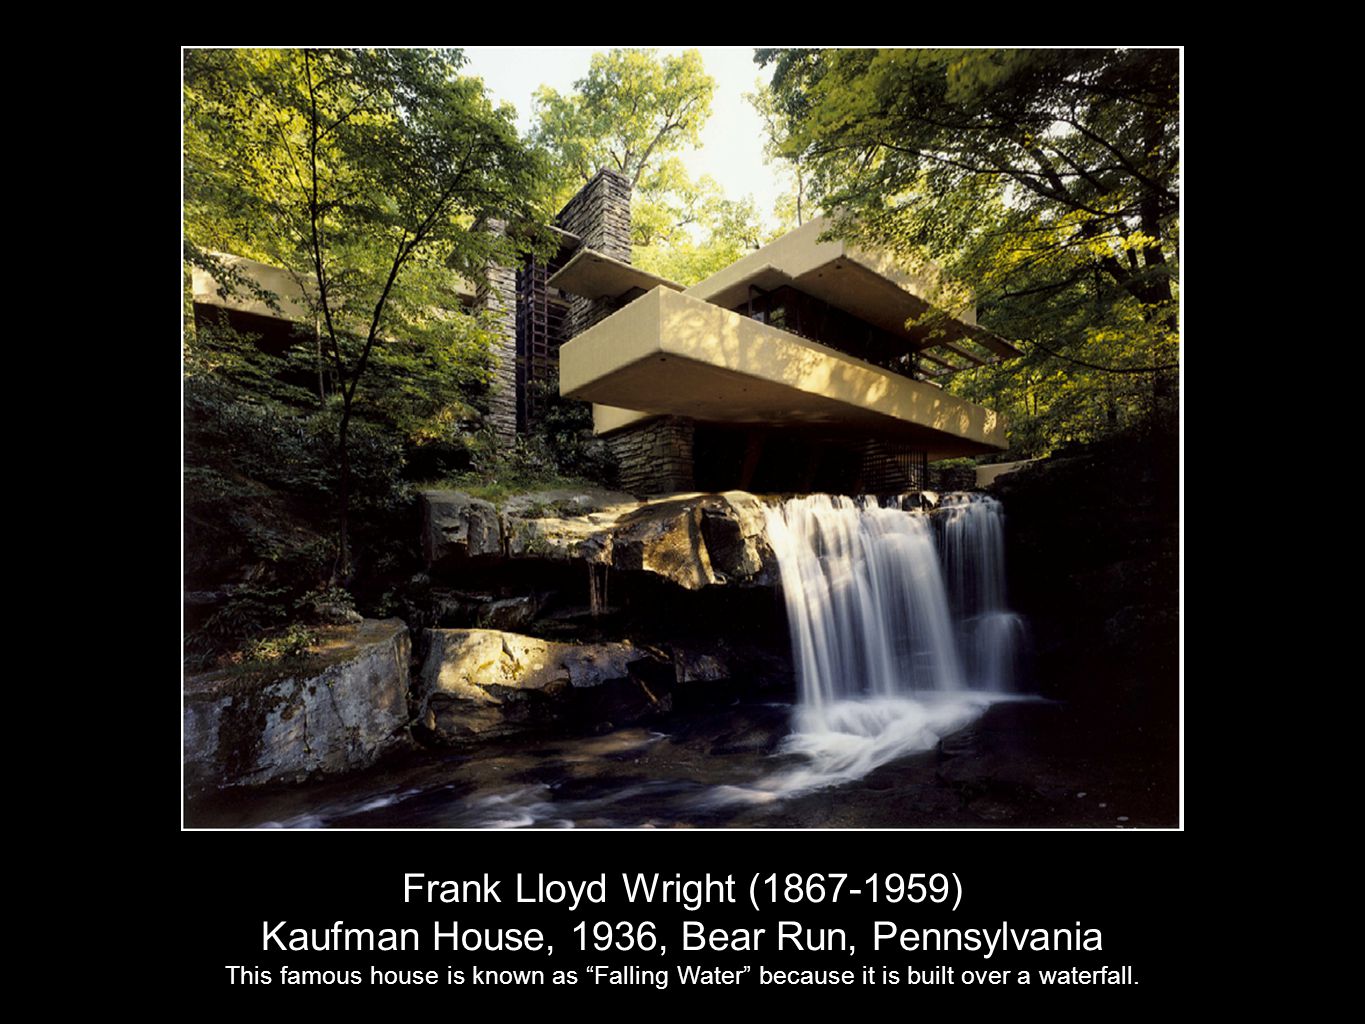 Kaufman House, 1936, Bear Run, Pennsylvania